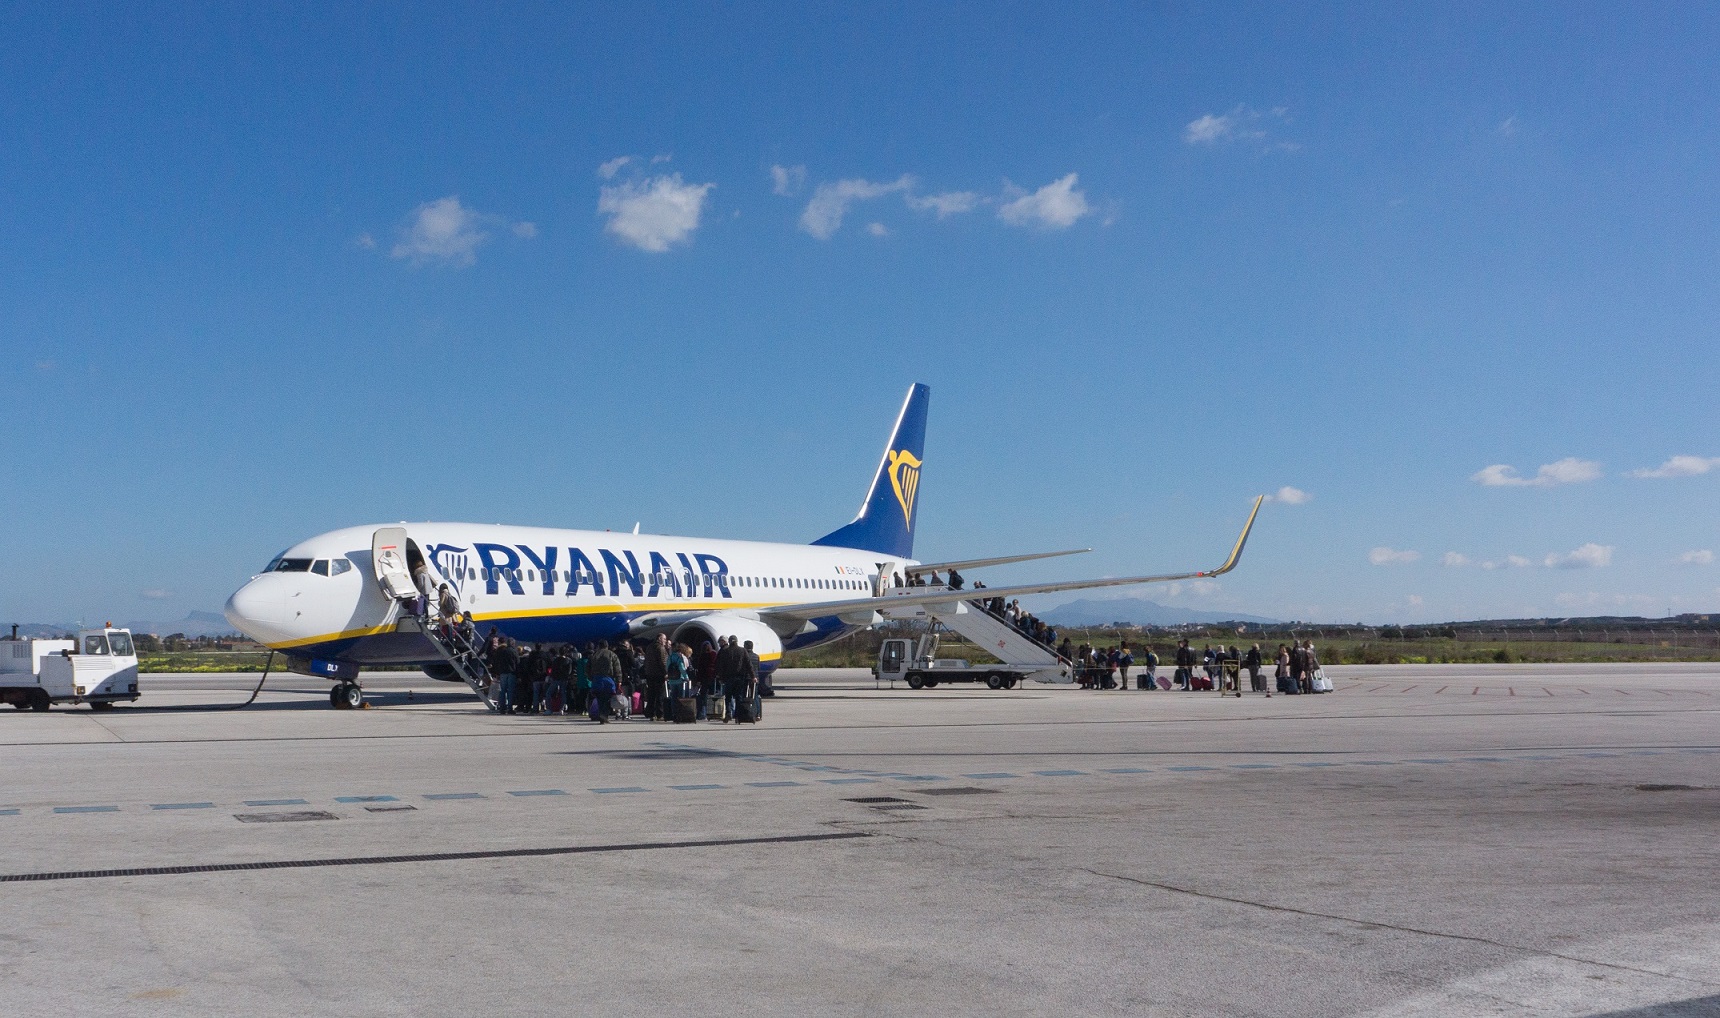 Un ritardo di 7 ore per il volo Trapani-Malta, coppia risarcita di 500 euro